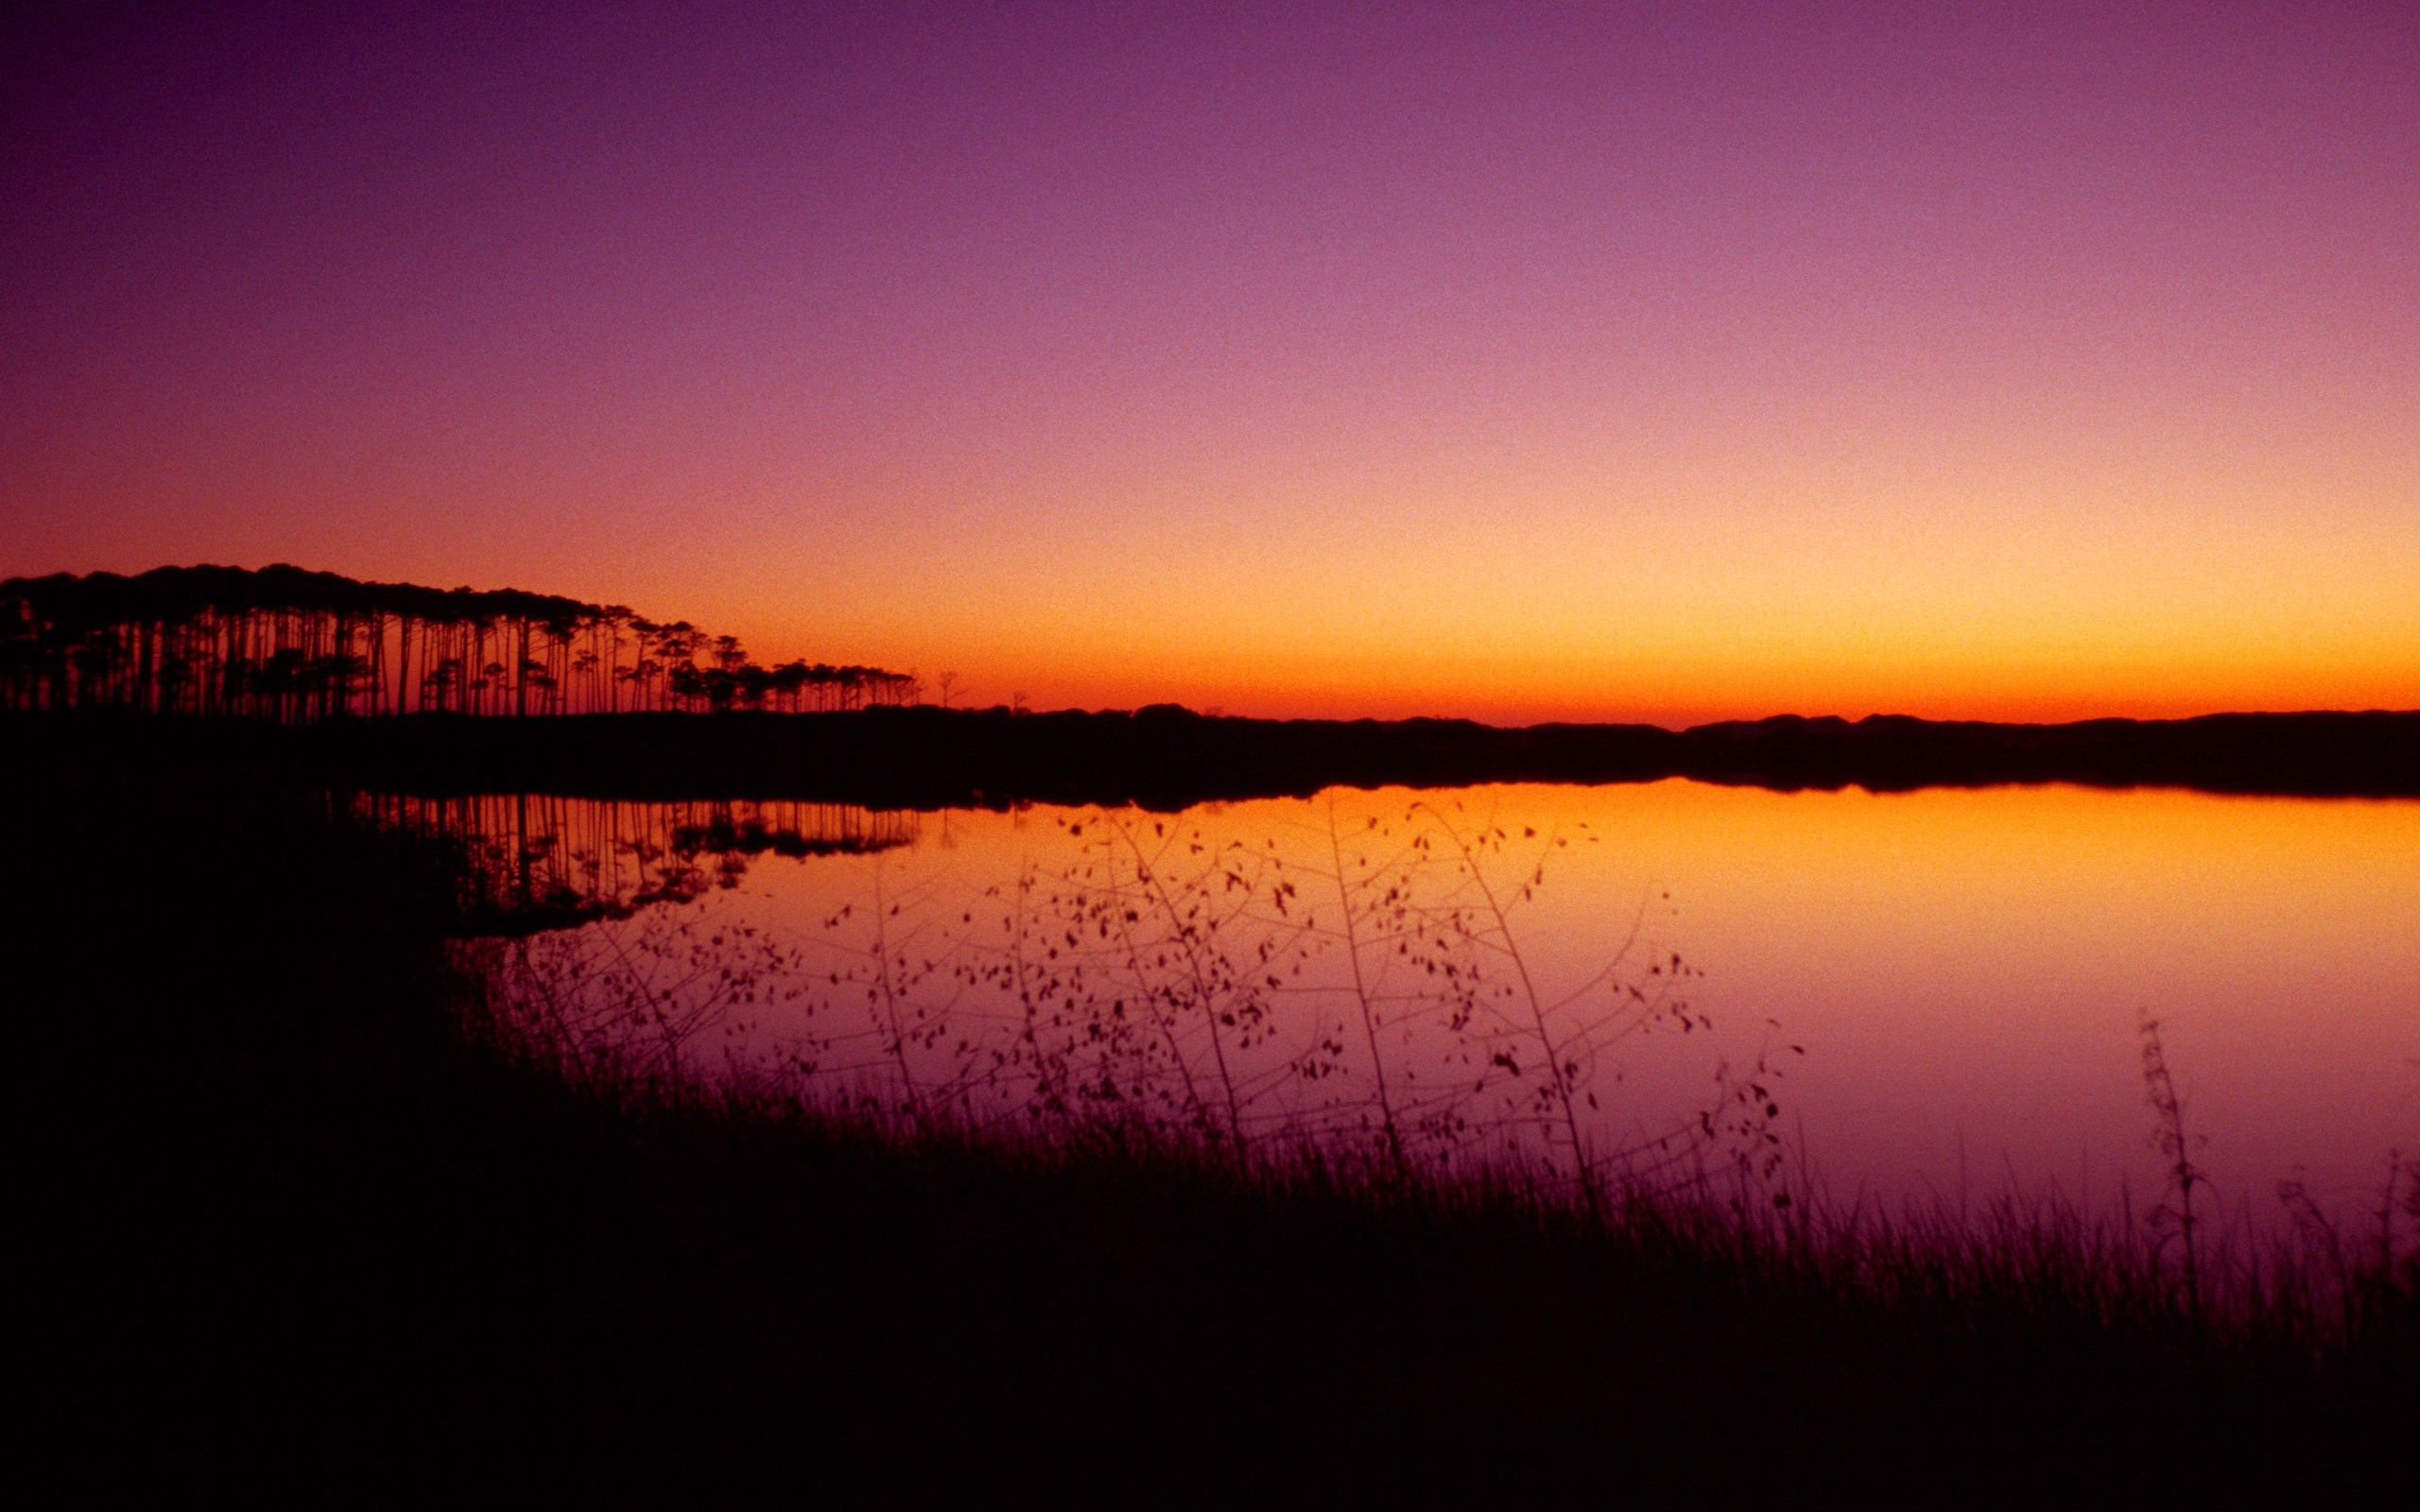 Schöner Hintergrundbild 2560x1600. Schöner Sonnenuntergang Hintergrundbilder. Schöner Sonnenuntergang frei fotos